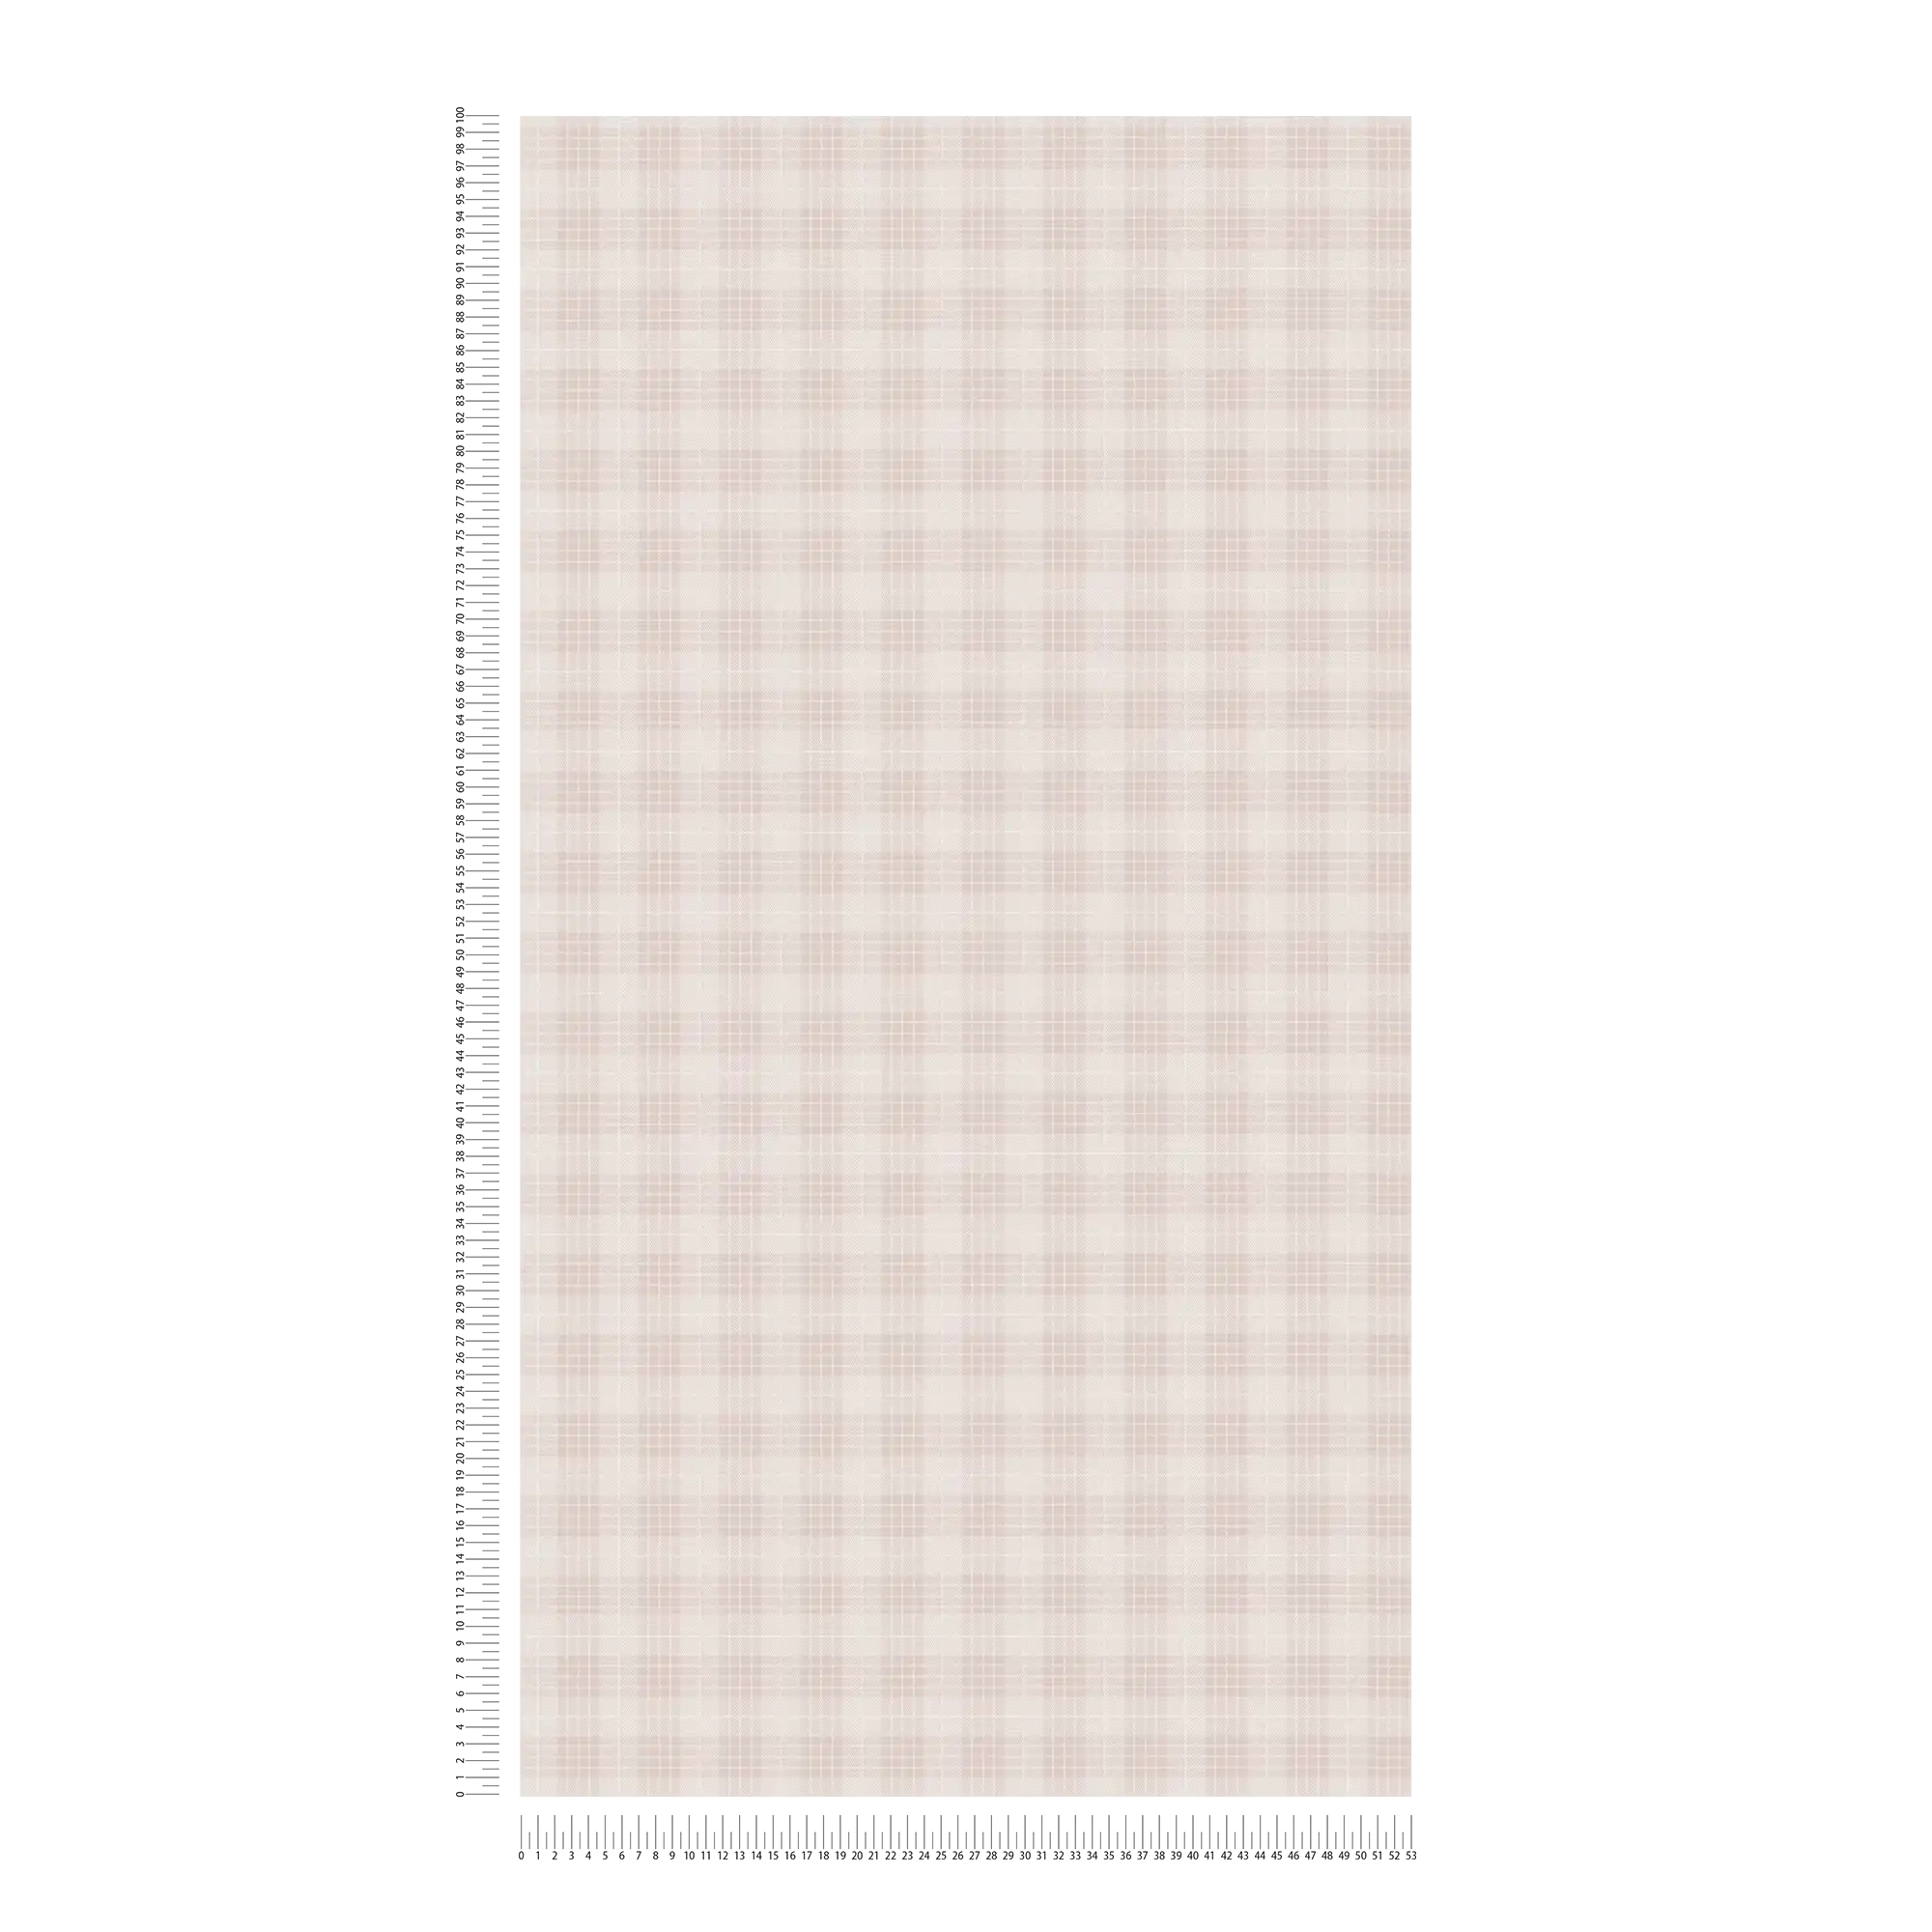             Carta da parati in tessuto non tessuto a scacchi con aspetto di tessuto di flanella - crema, bianco
        